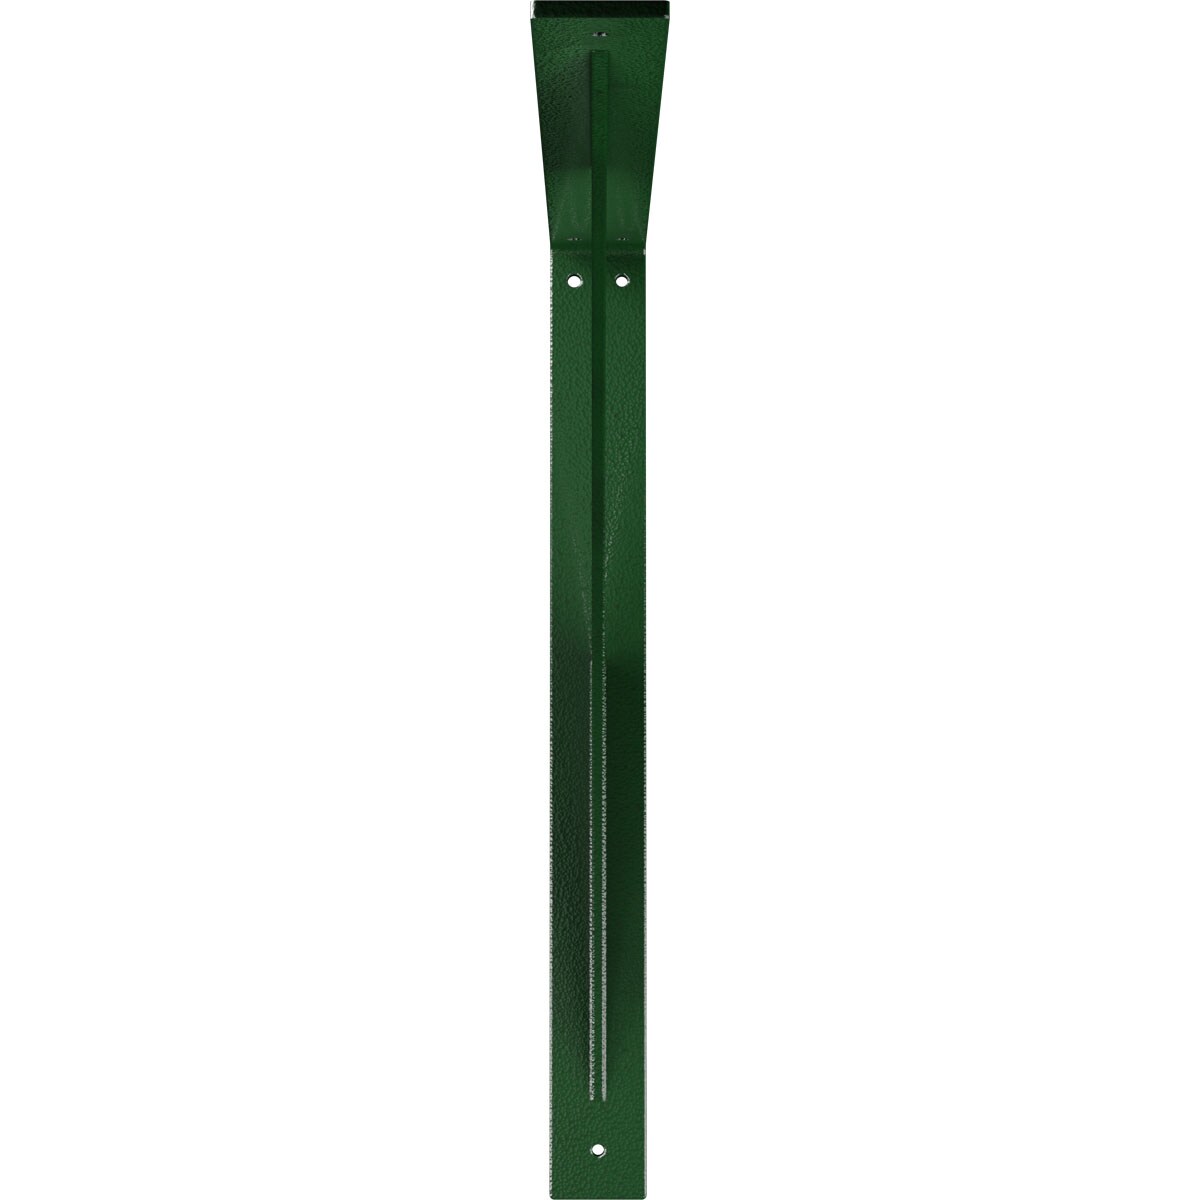 Ekena Millwork Legacy 20-in x 2-in x 20-in Green Steel Countertop Support Bracket